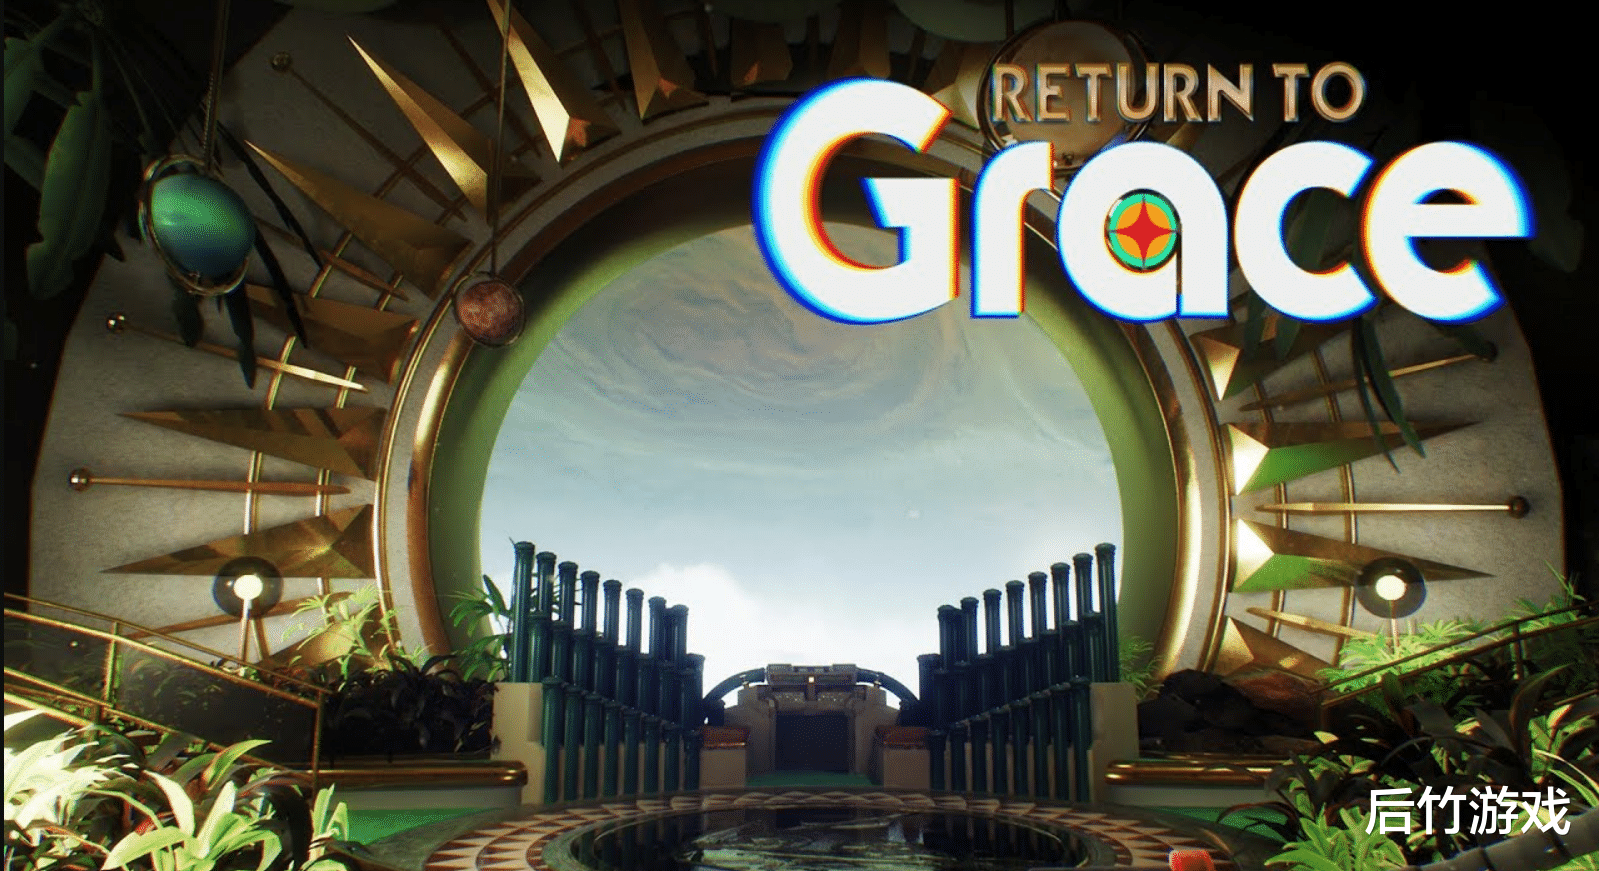 怀旧科幻风第一人称冒险游戏《Return to Grace》即将发售